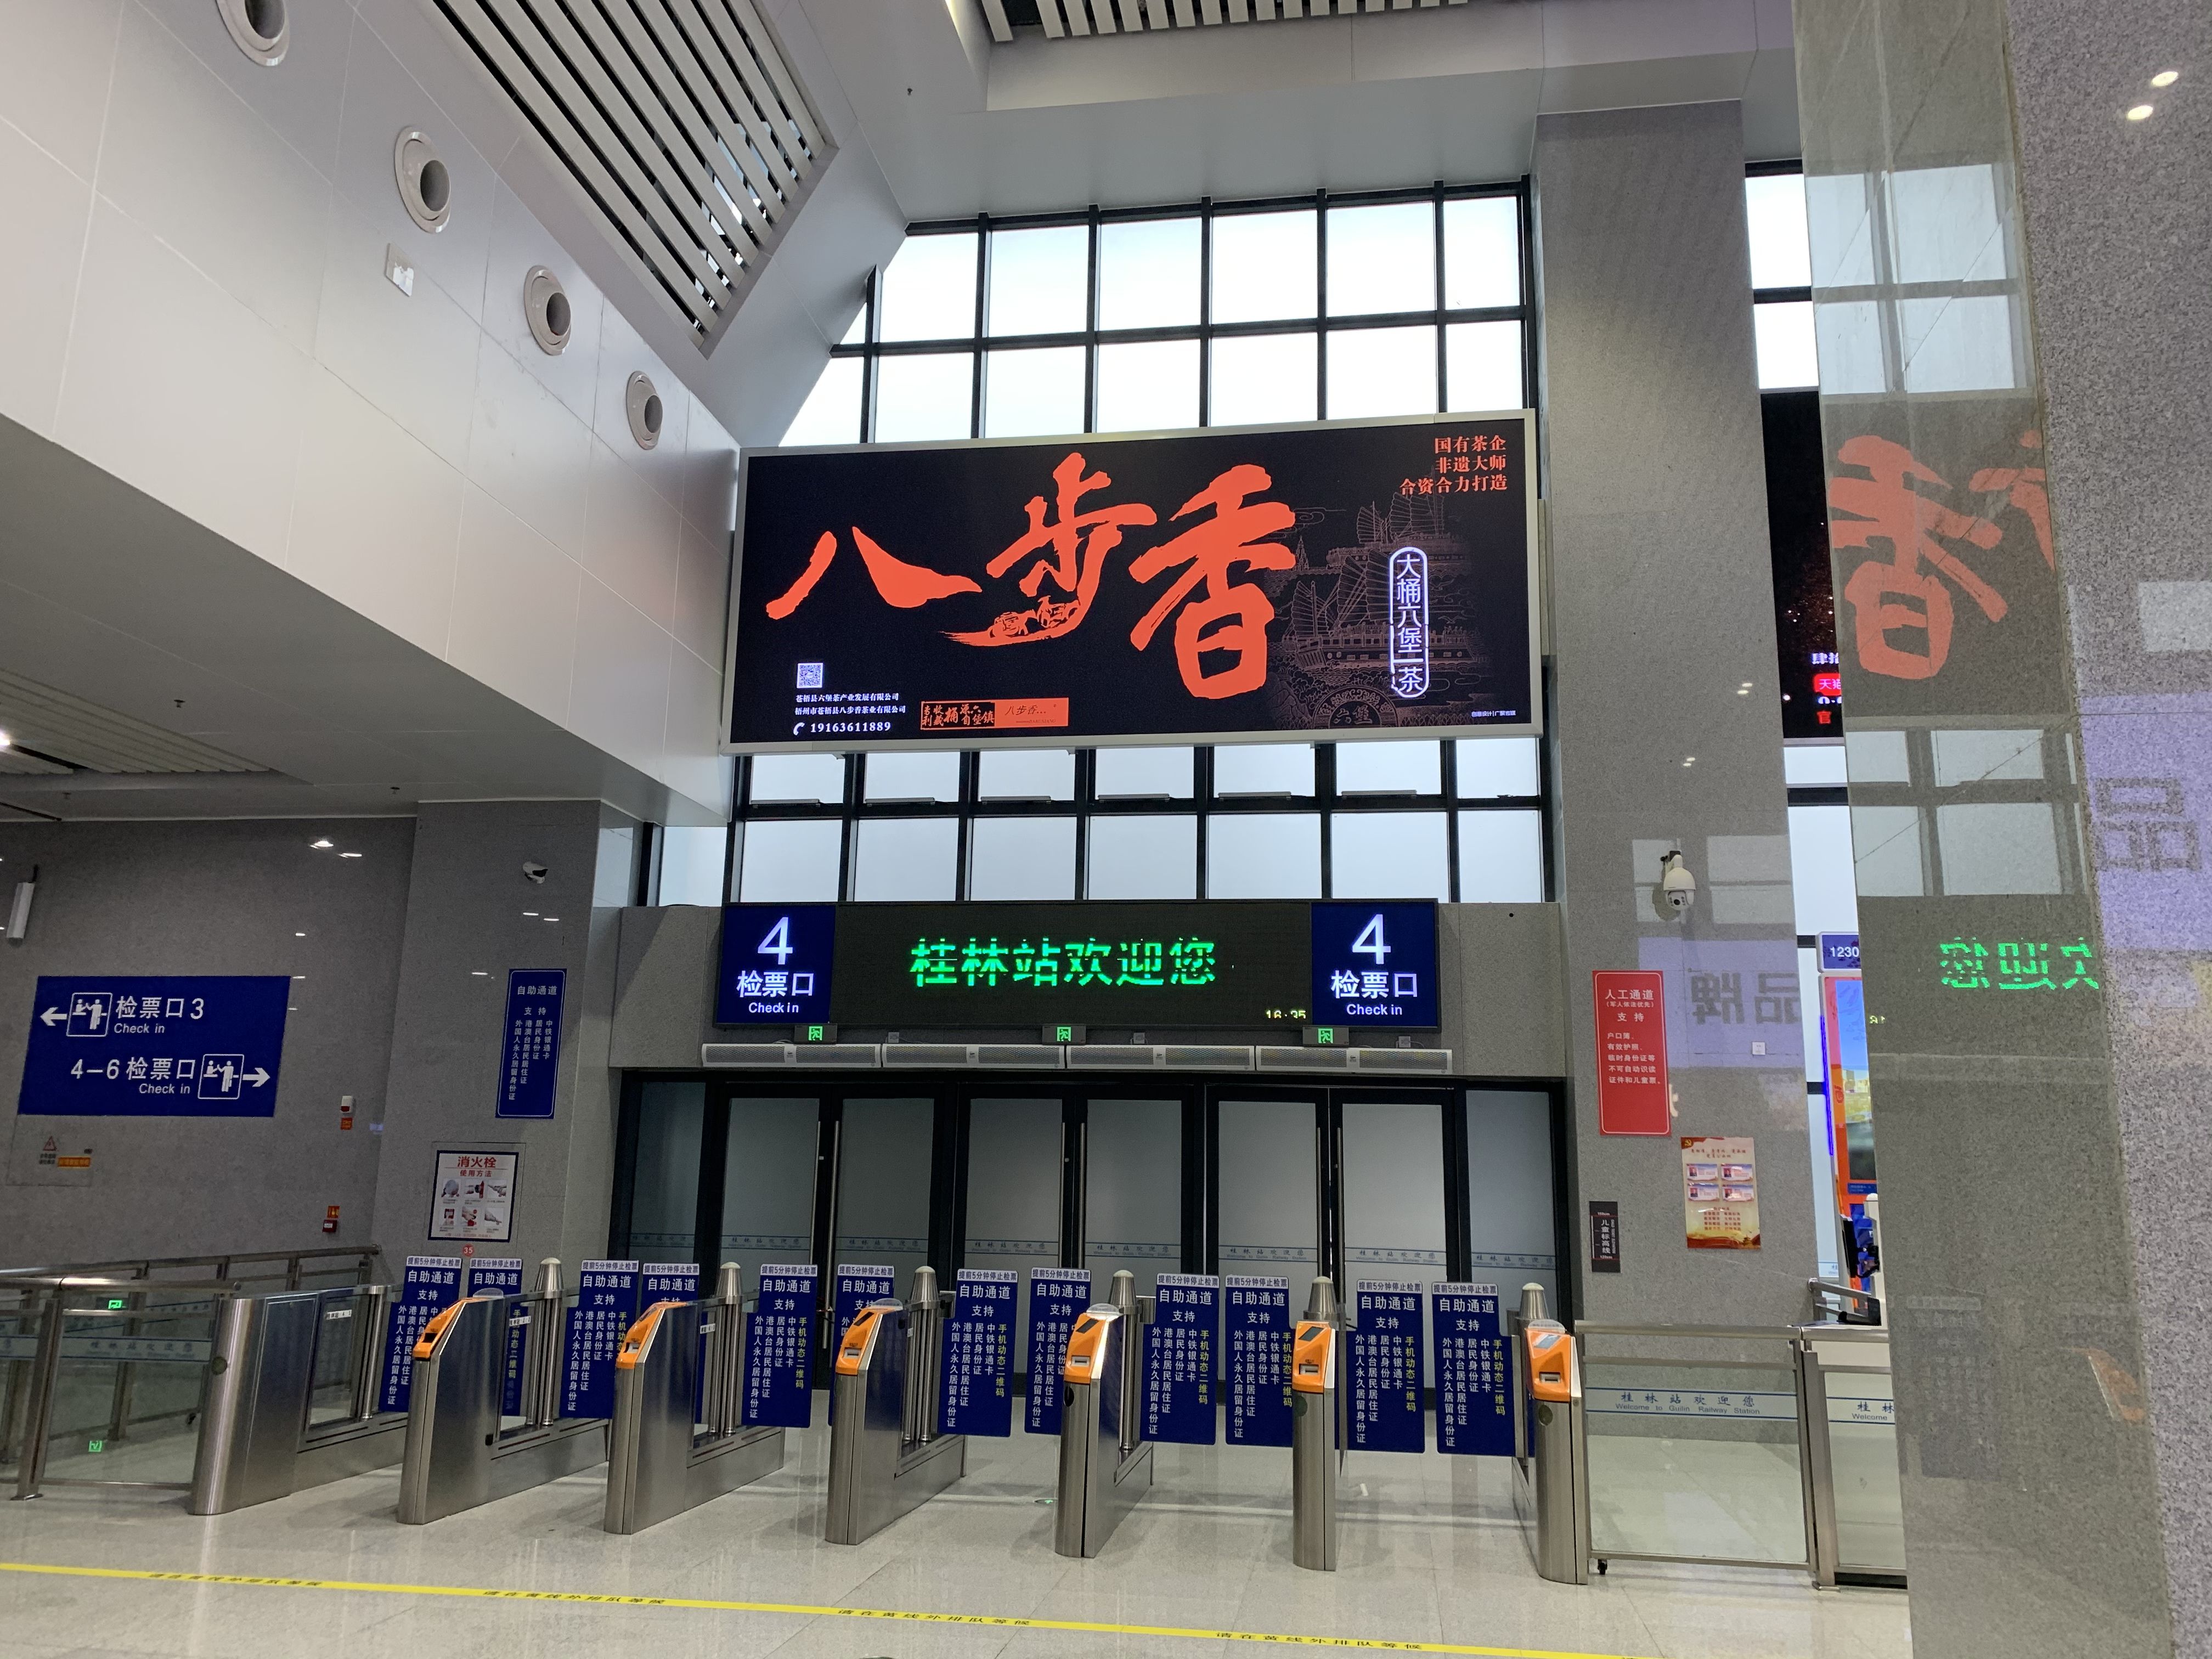 广西桂林桂林站二楼候车室第4/5检票口上方火车高铁灯箱